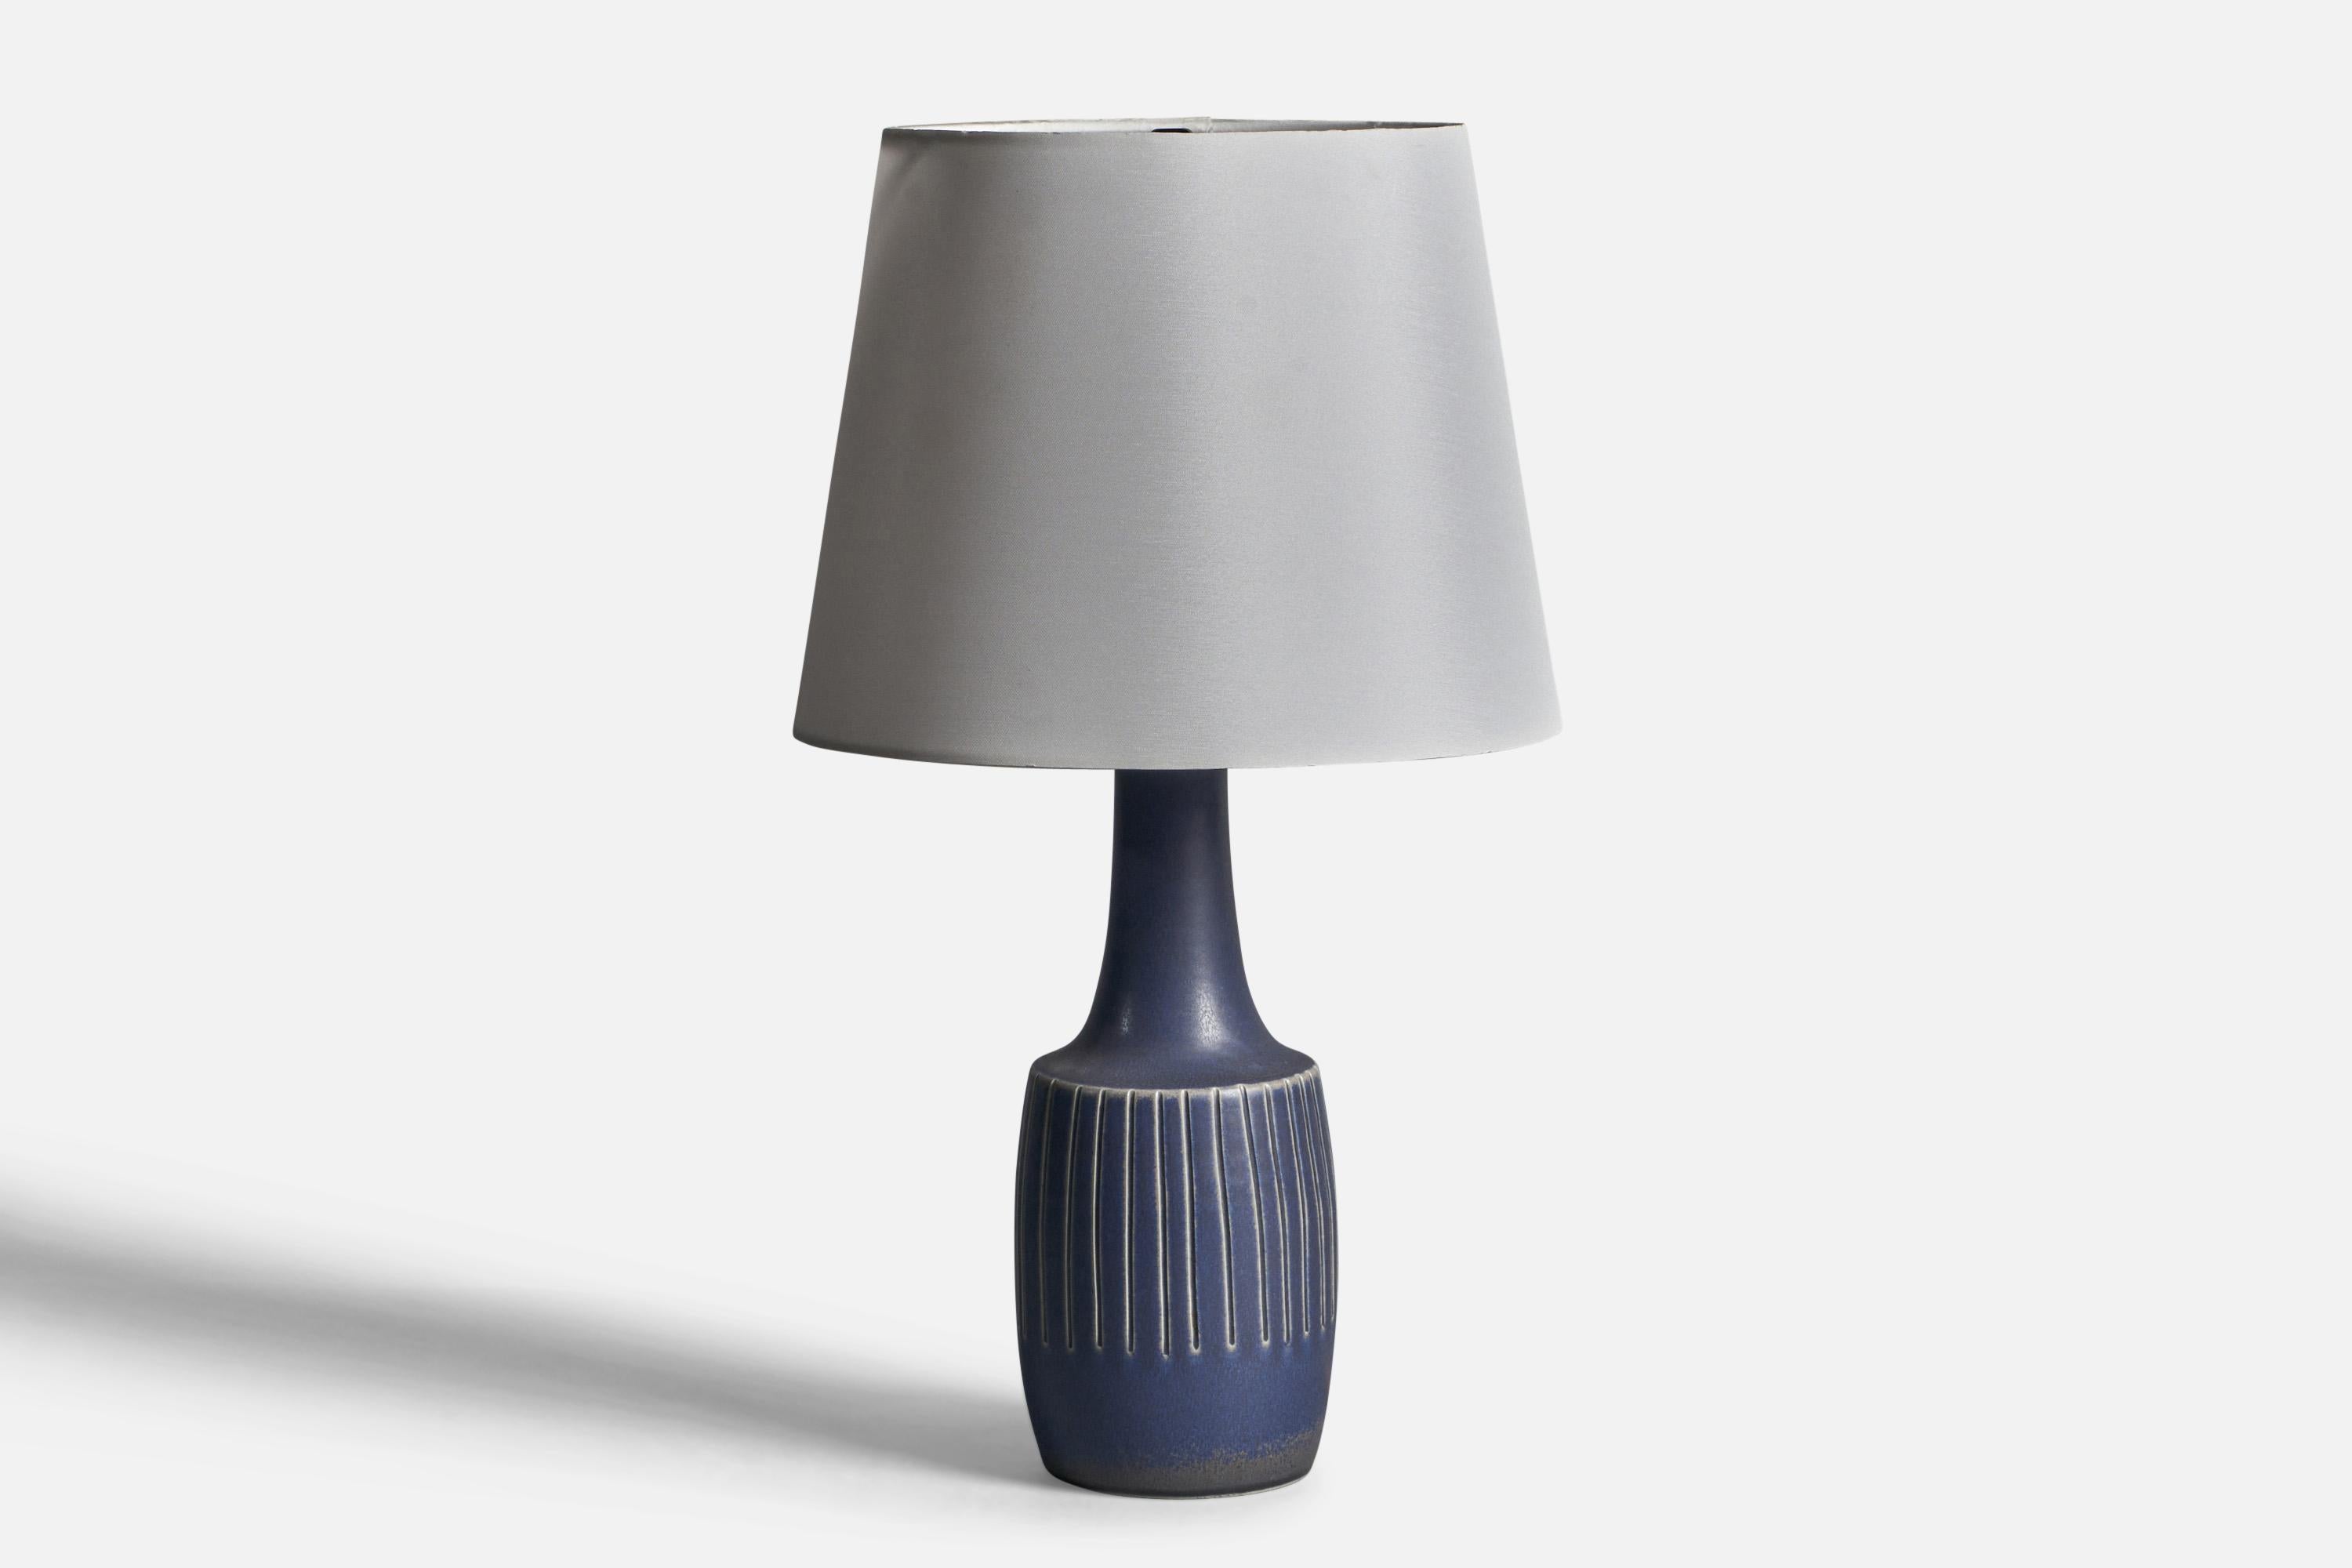 Tischlampe aus blau glasiertem Steingut, entworfen und hergestellt von Søholm, Bornholm, Dänemark, 1960er Jahre.

Abmessungen der Lampe (Zoll): 13